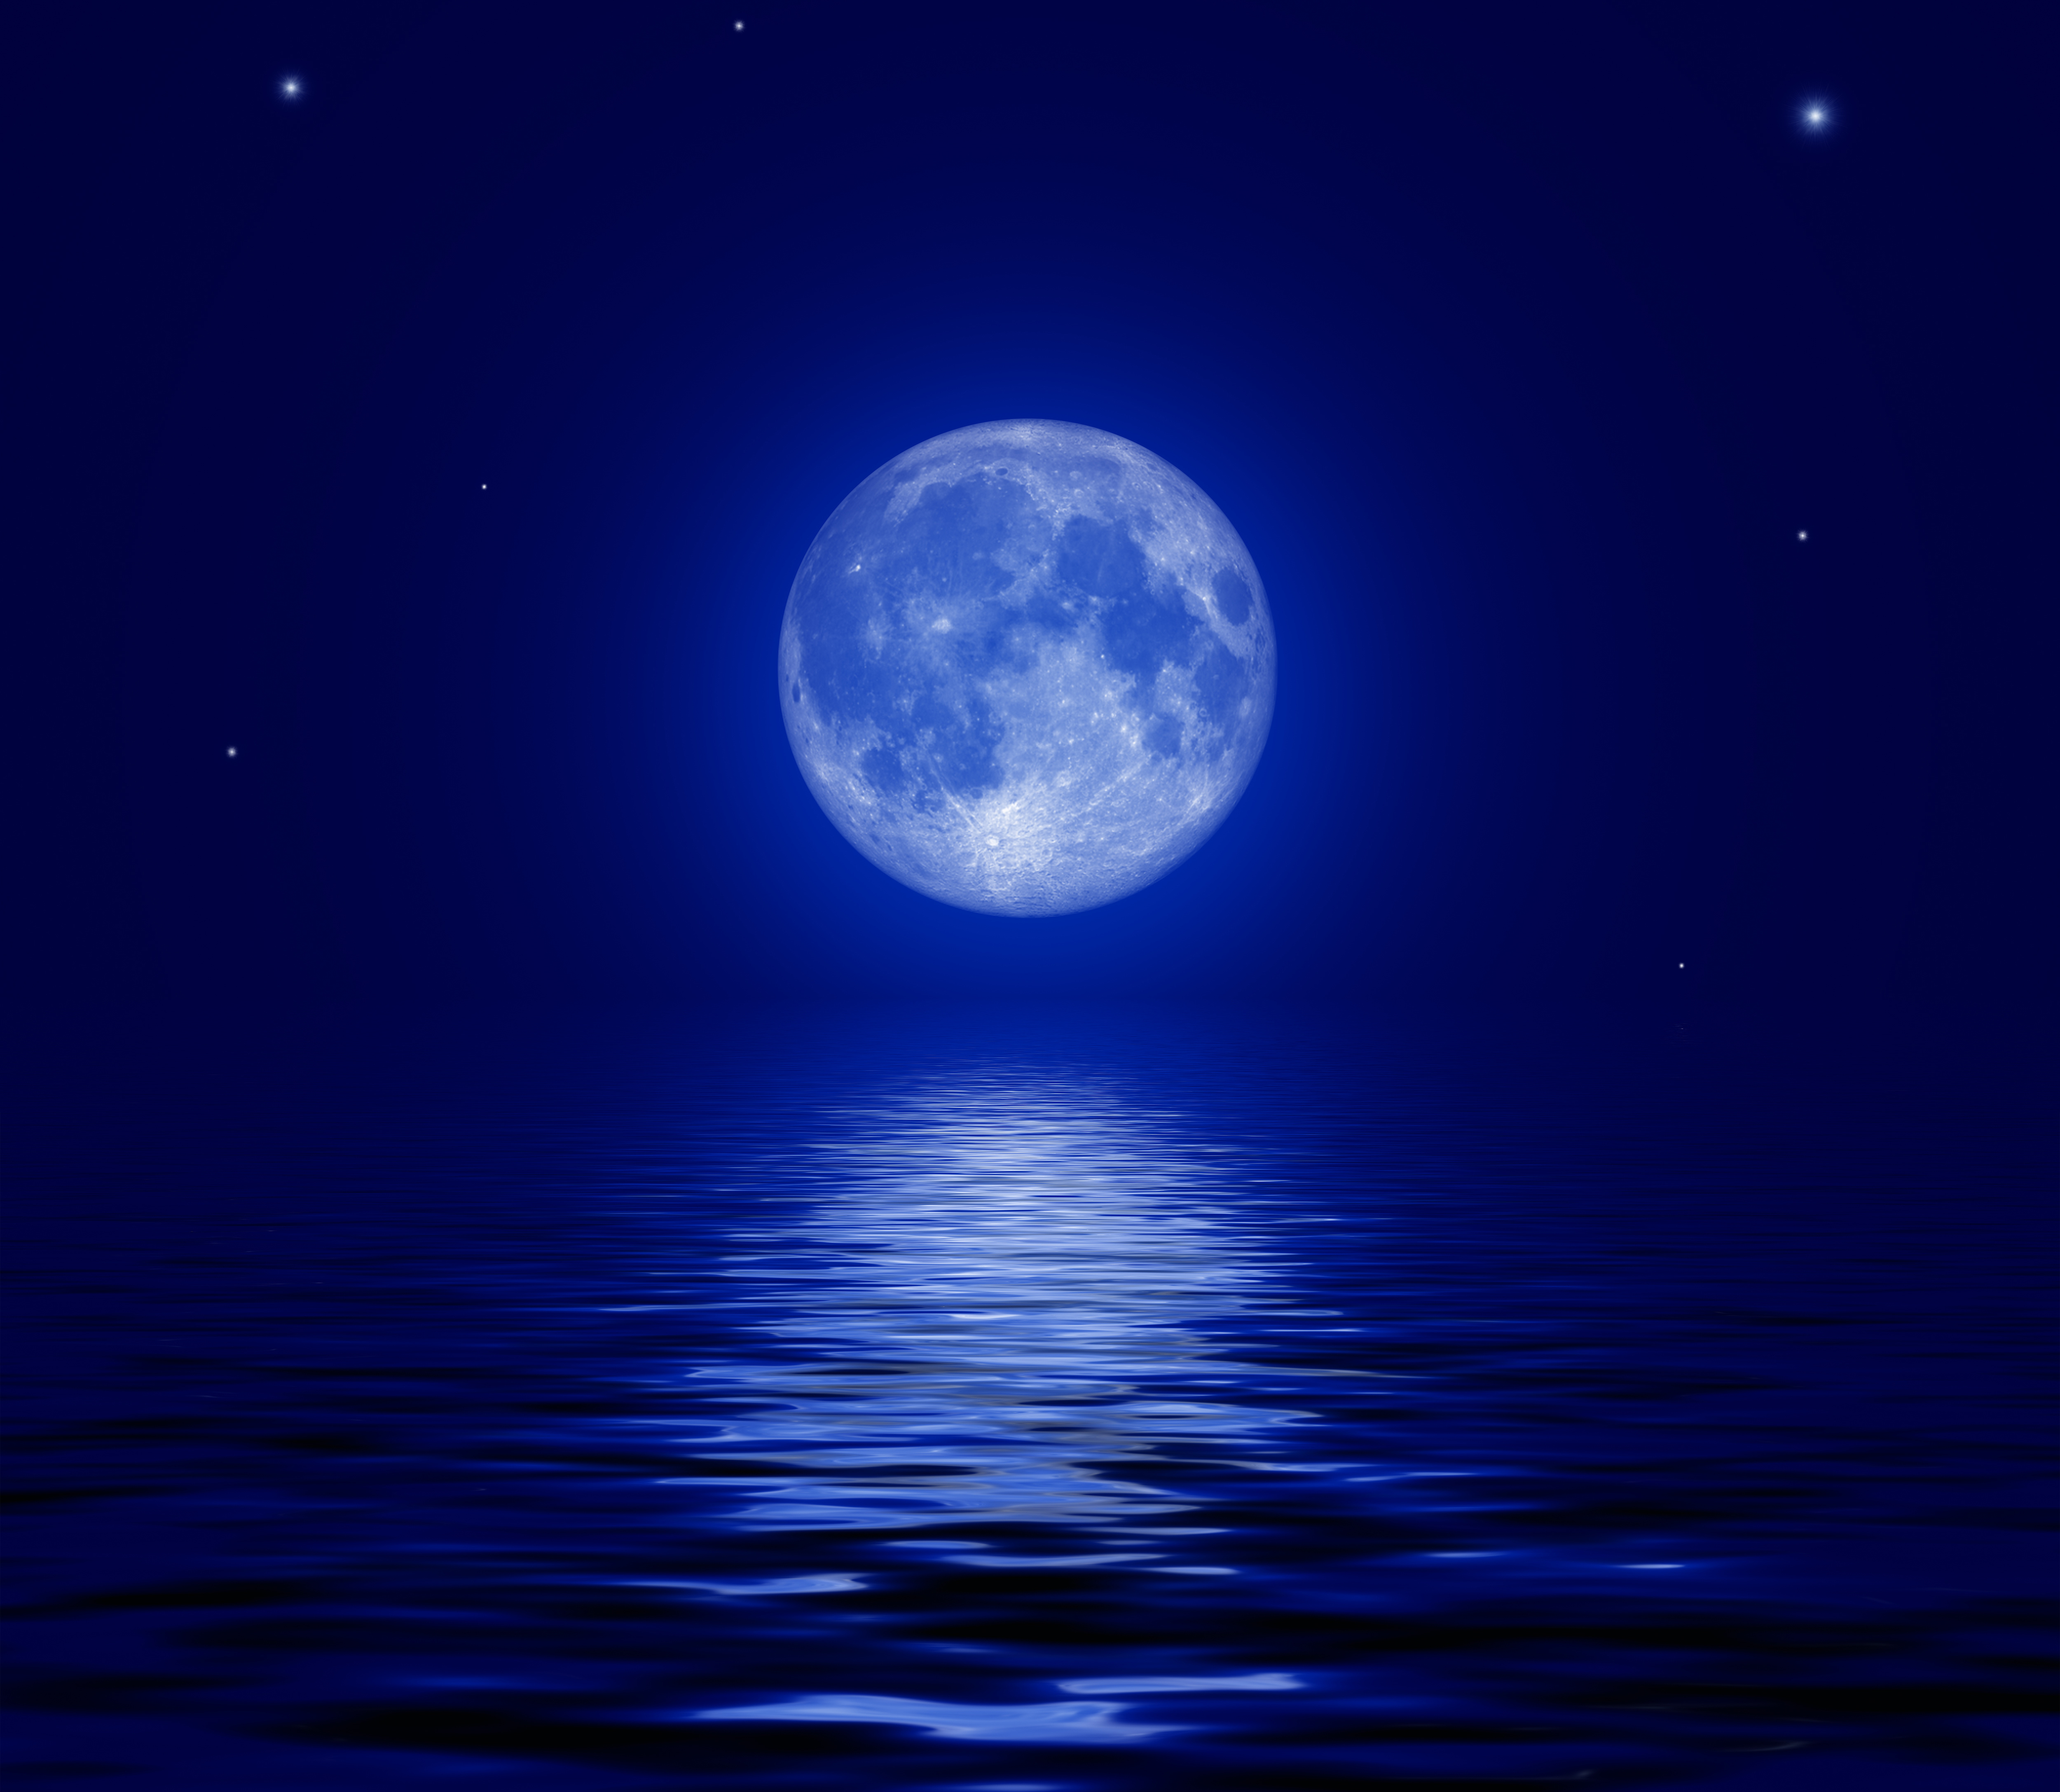 Скачать обои бесплатно Звезды, Луна, Отражение, Океан, Синий, Художественные картинка на рабочий стол ПК